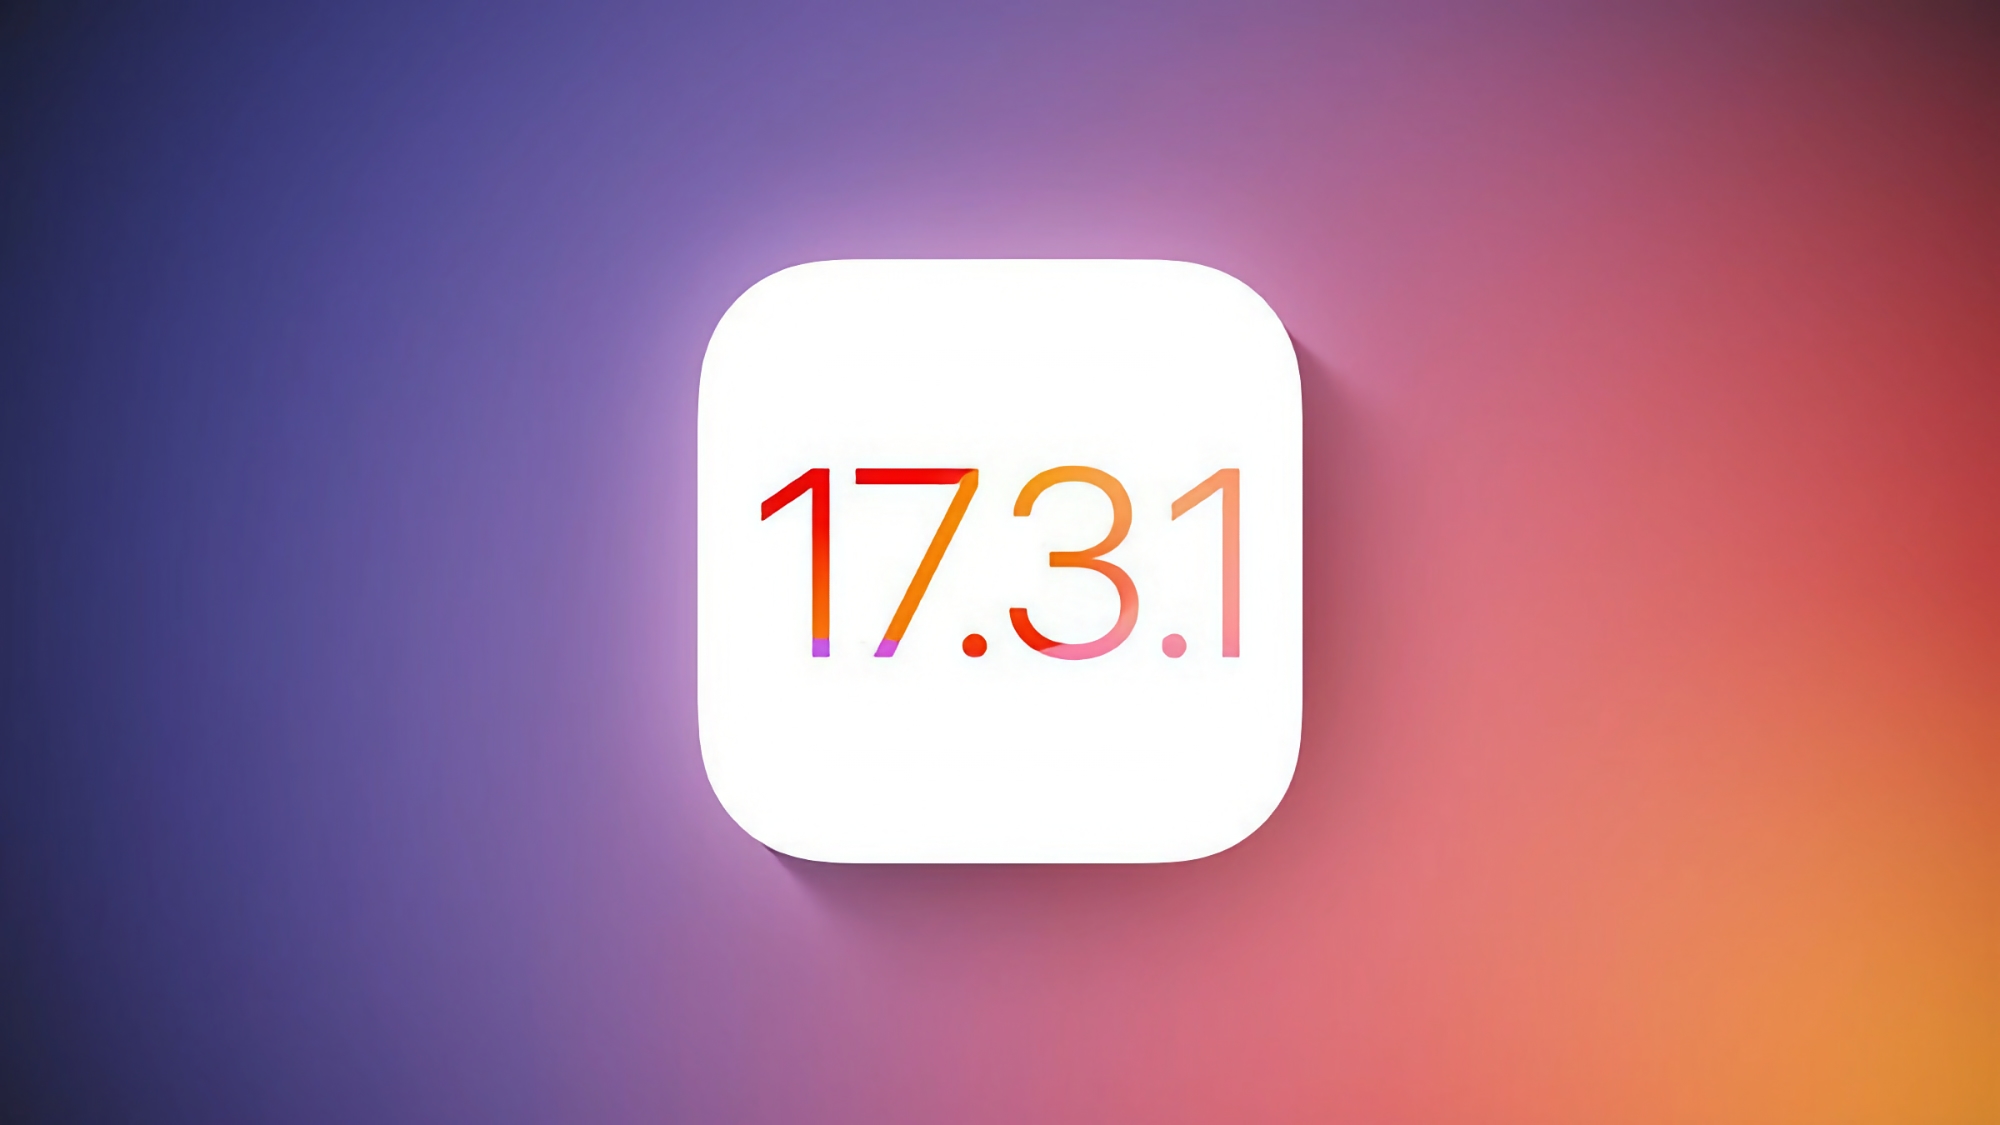 Apple hat iOS 17.3.1 für iPhone-Nutzer veröffentlicht: Was ist neu?